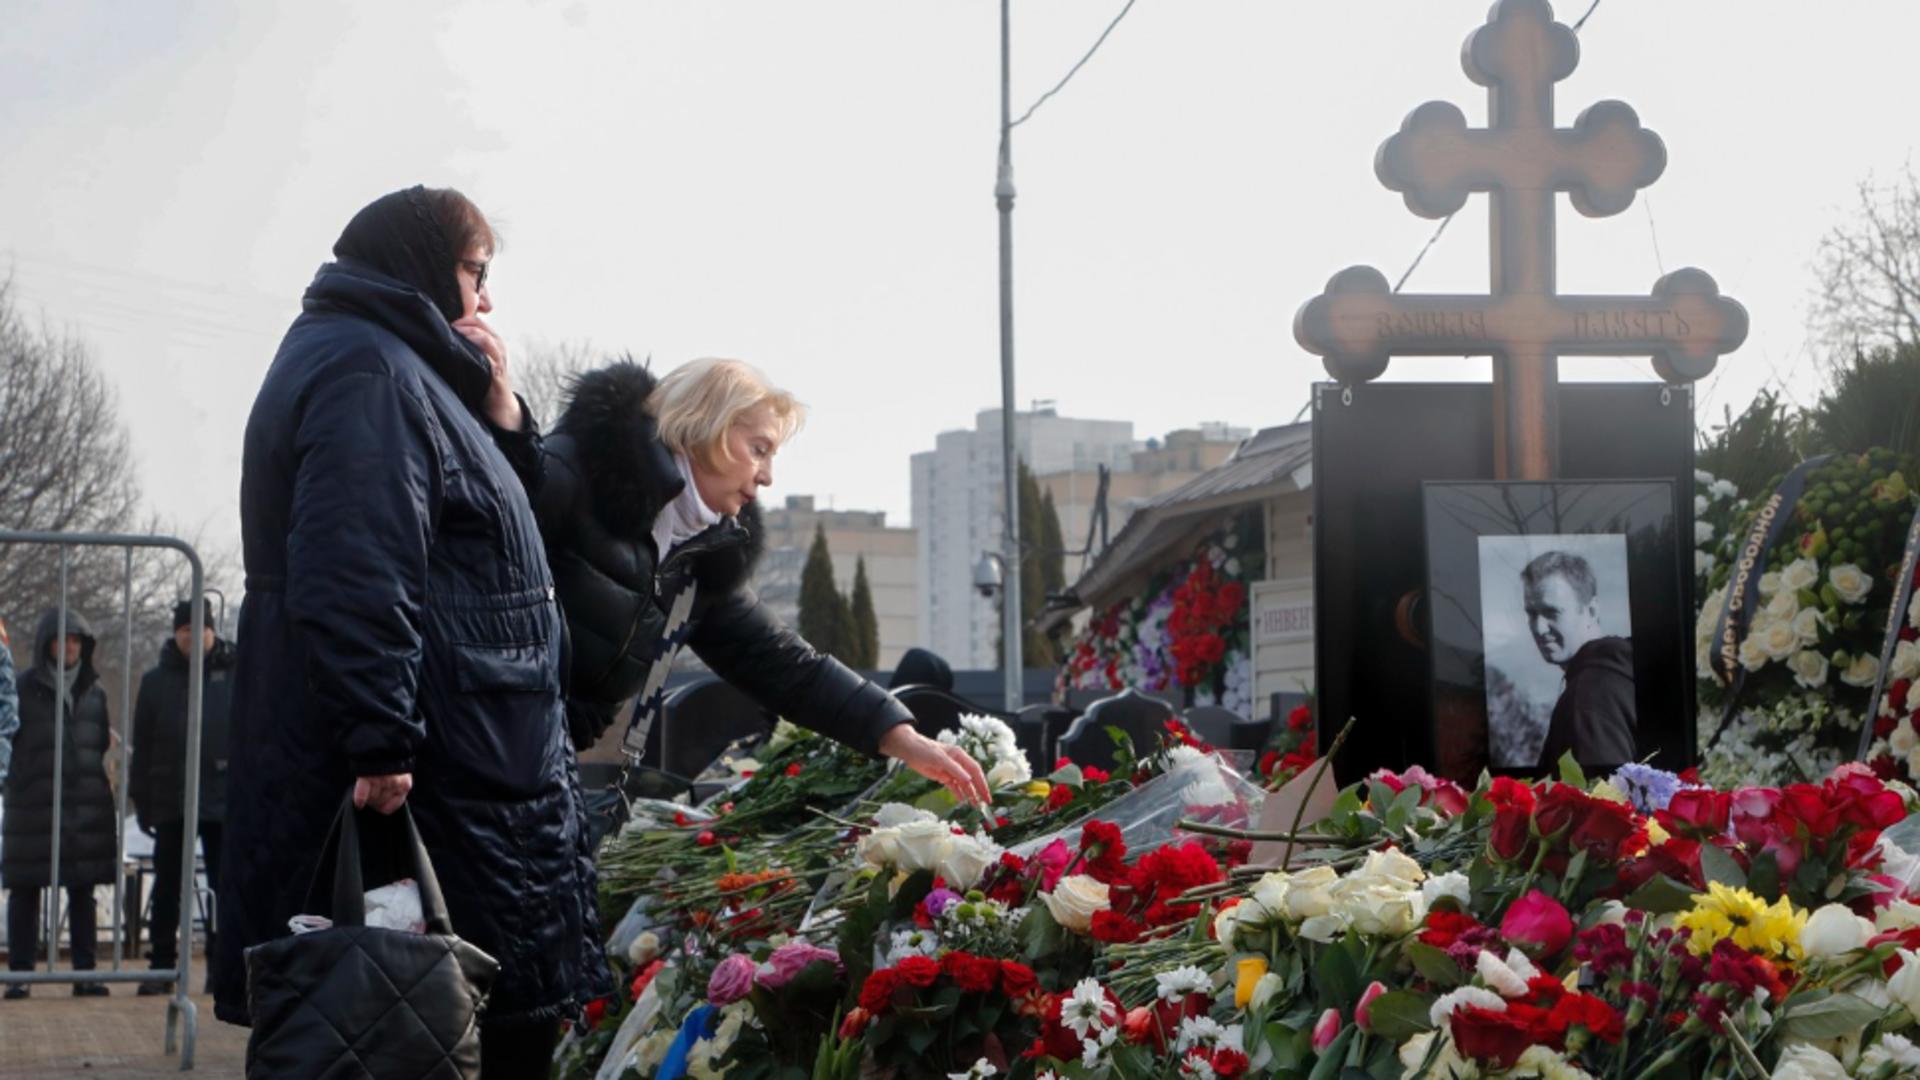 Muzica surprinzătoare aleasă la înmormântarea lui Aleksei Navalnî: mesajul ascuns transmis Kremlinului/ Profimedia